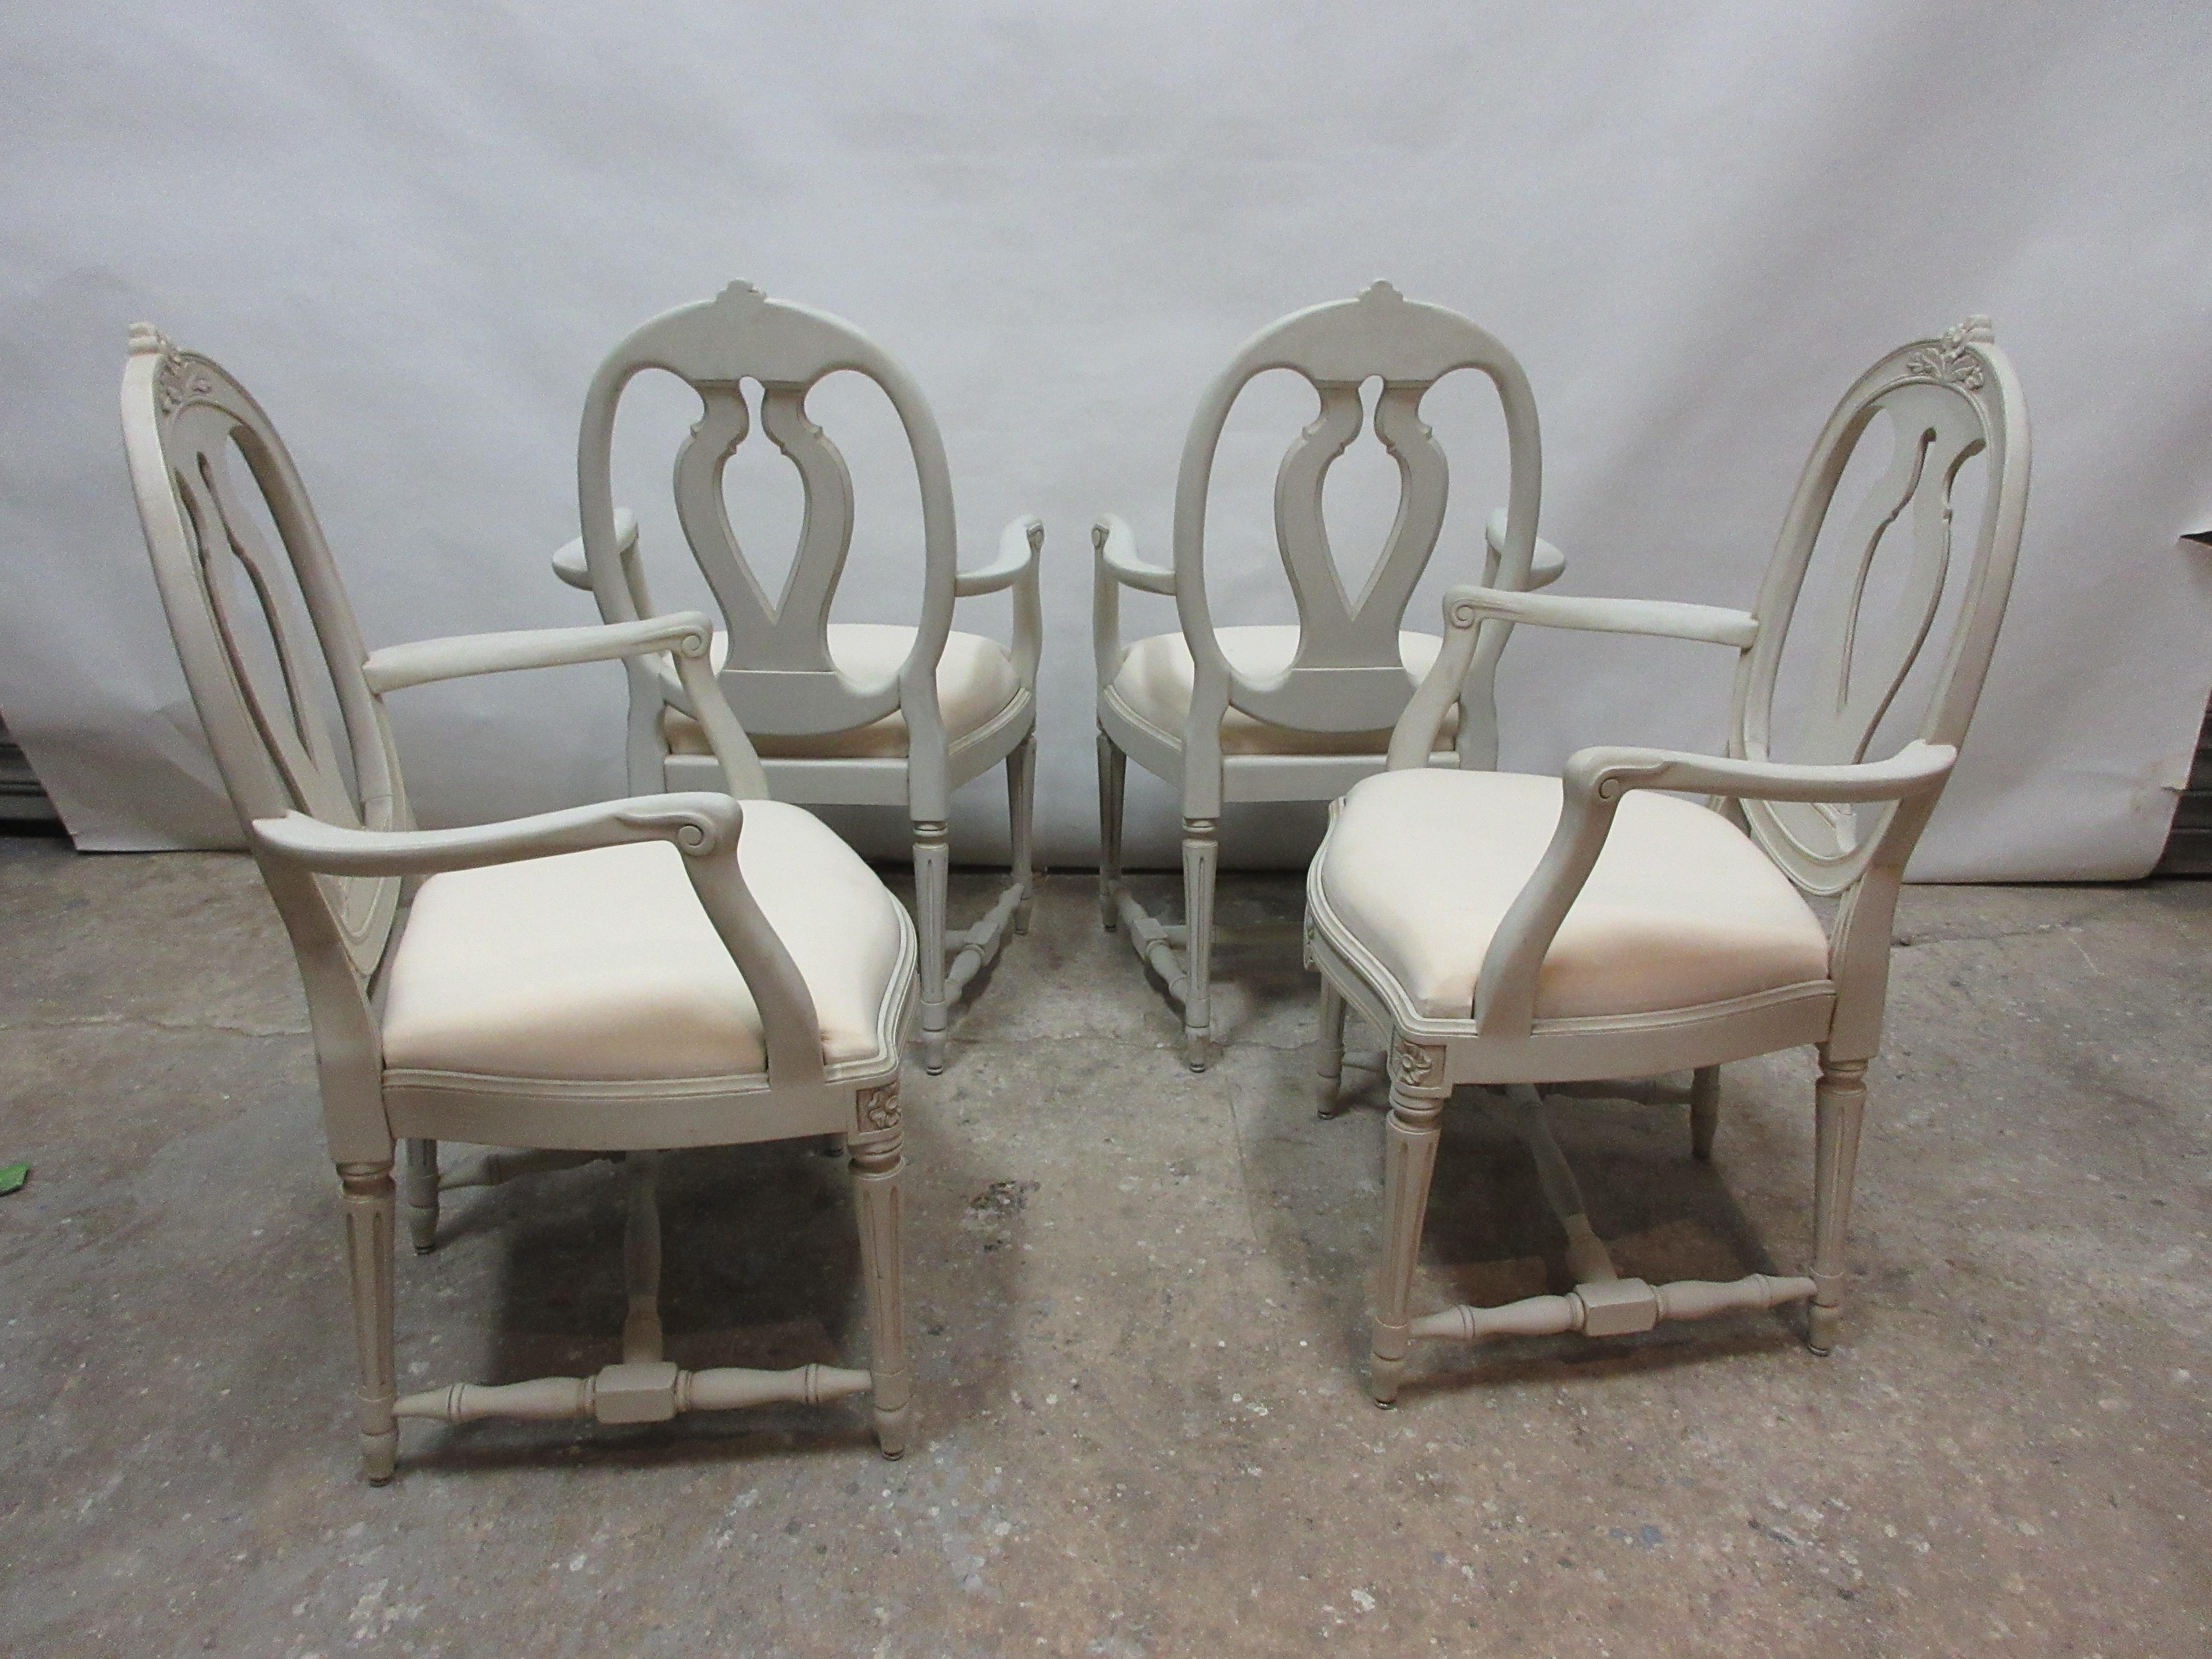 Dies ist ein Satz von 4 schwedischen gustavianischen Sesseln. Sie wurden restauriert und mit Milchfarben 